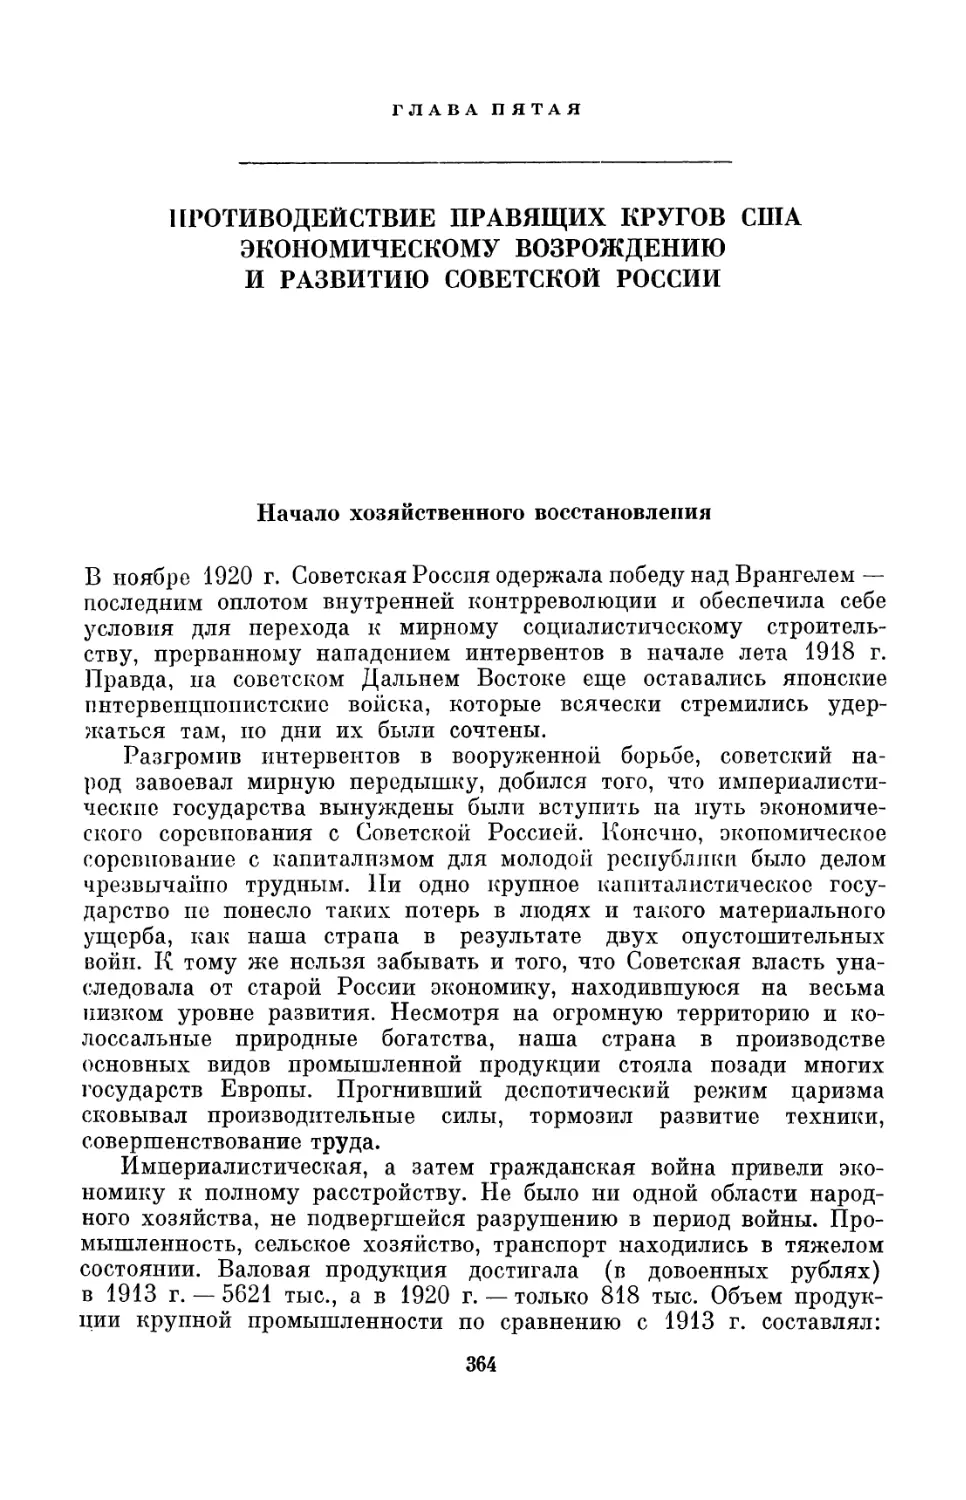 Глава пятая. Противодействие правящих кругов США экономическому возрождению и развитию Советской России